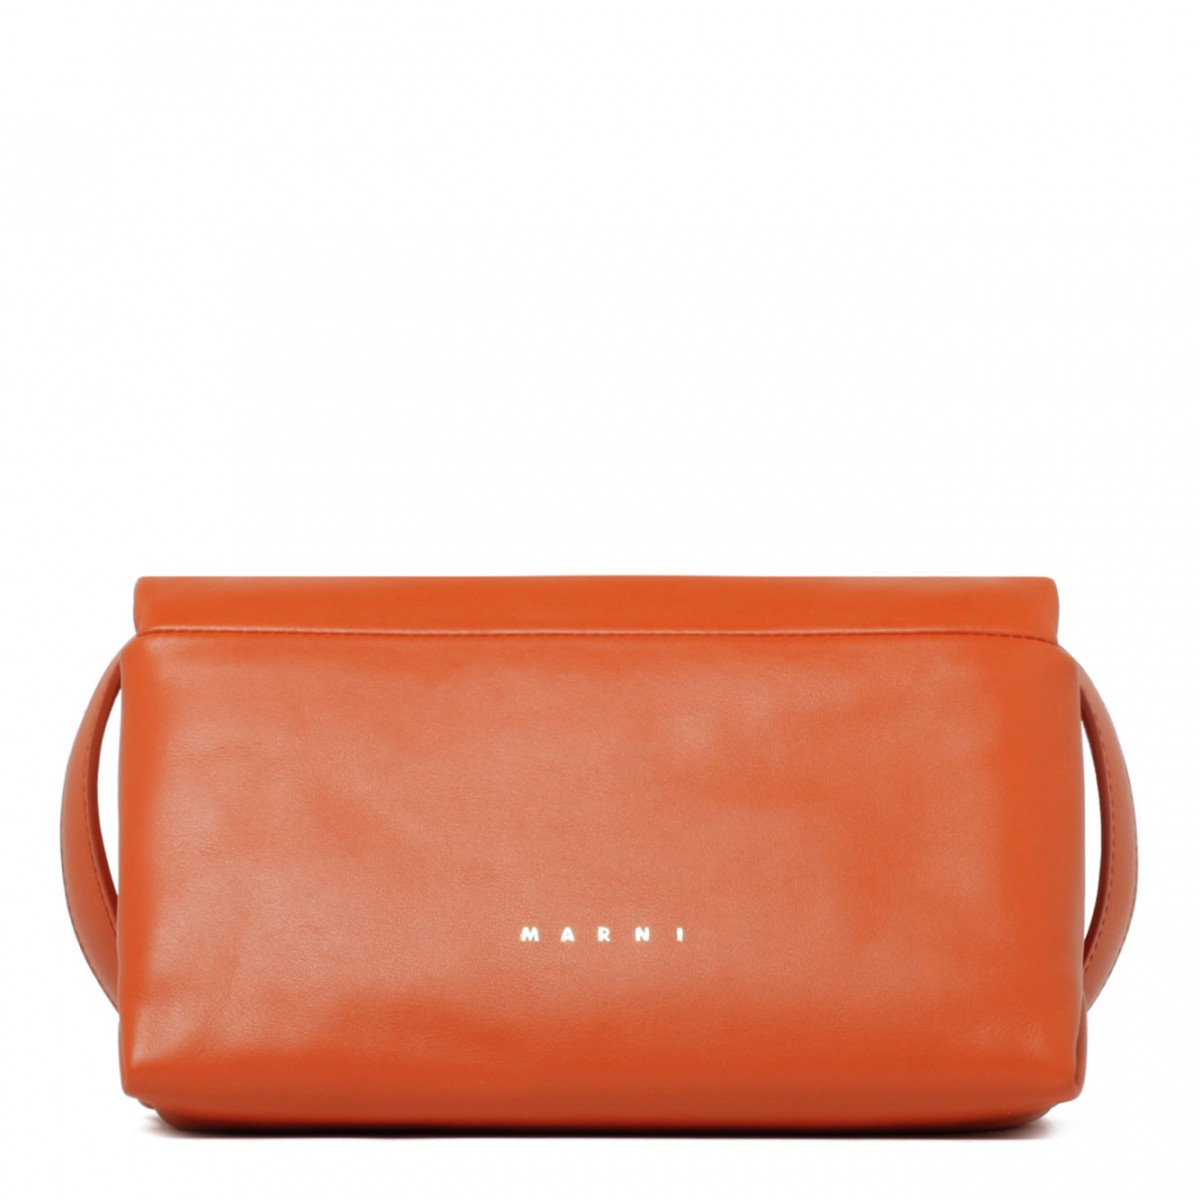 Sunset Orange Calf Leather Small Prisma Shoulder Bag